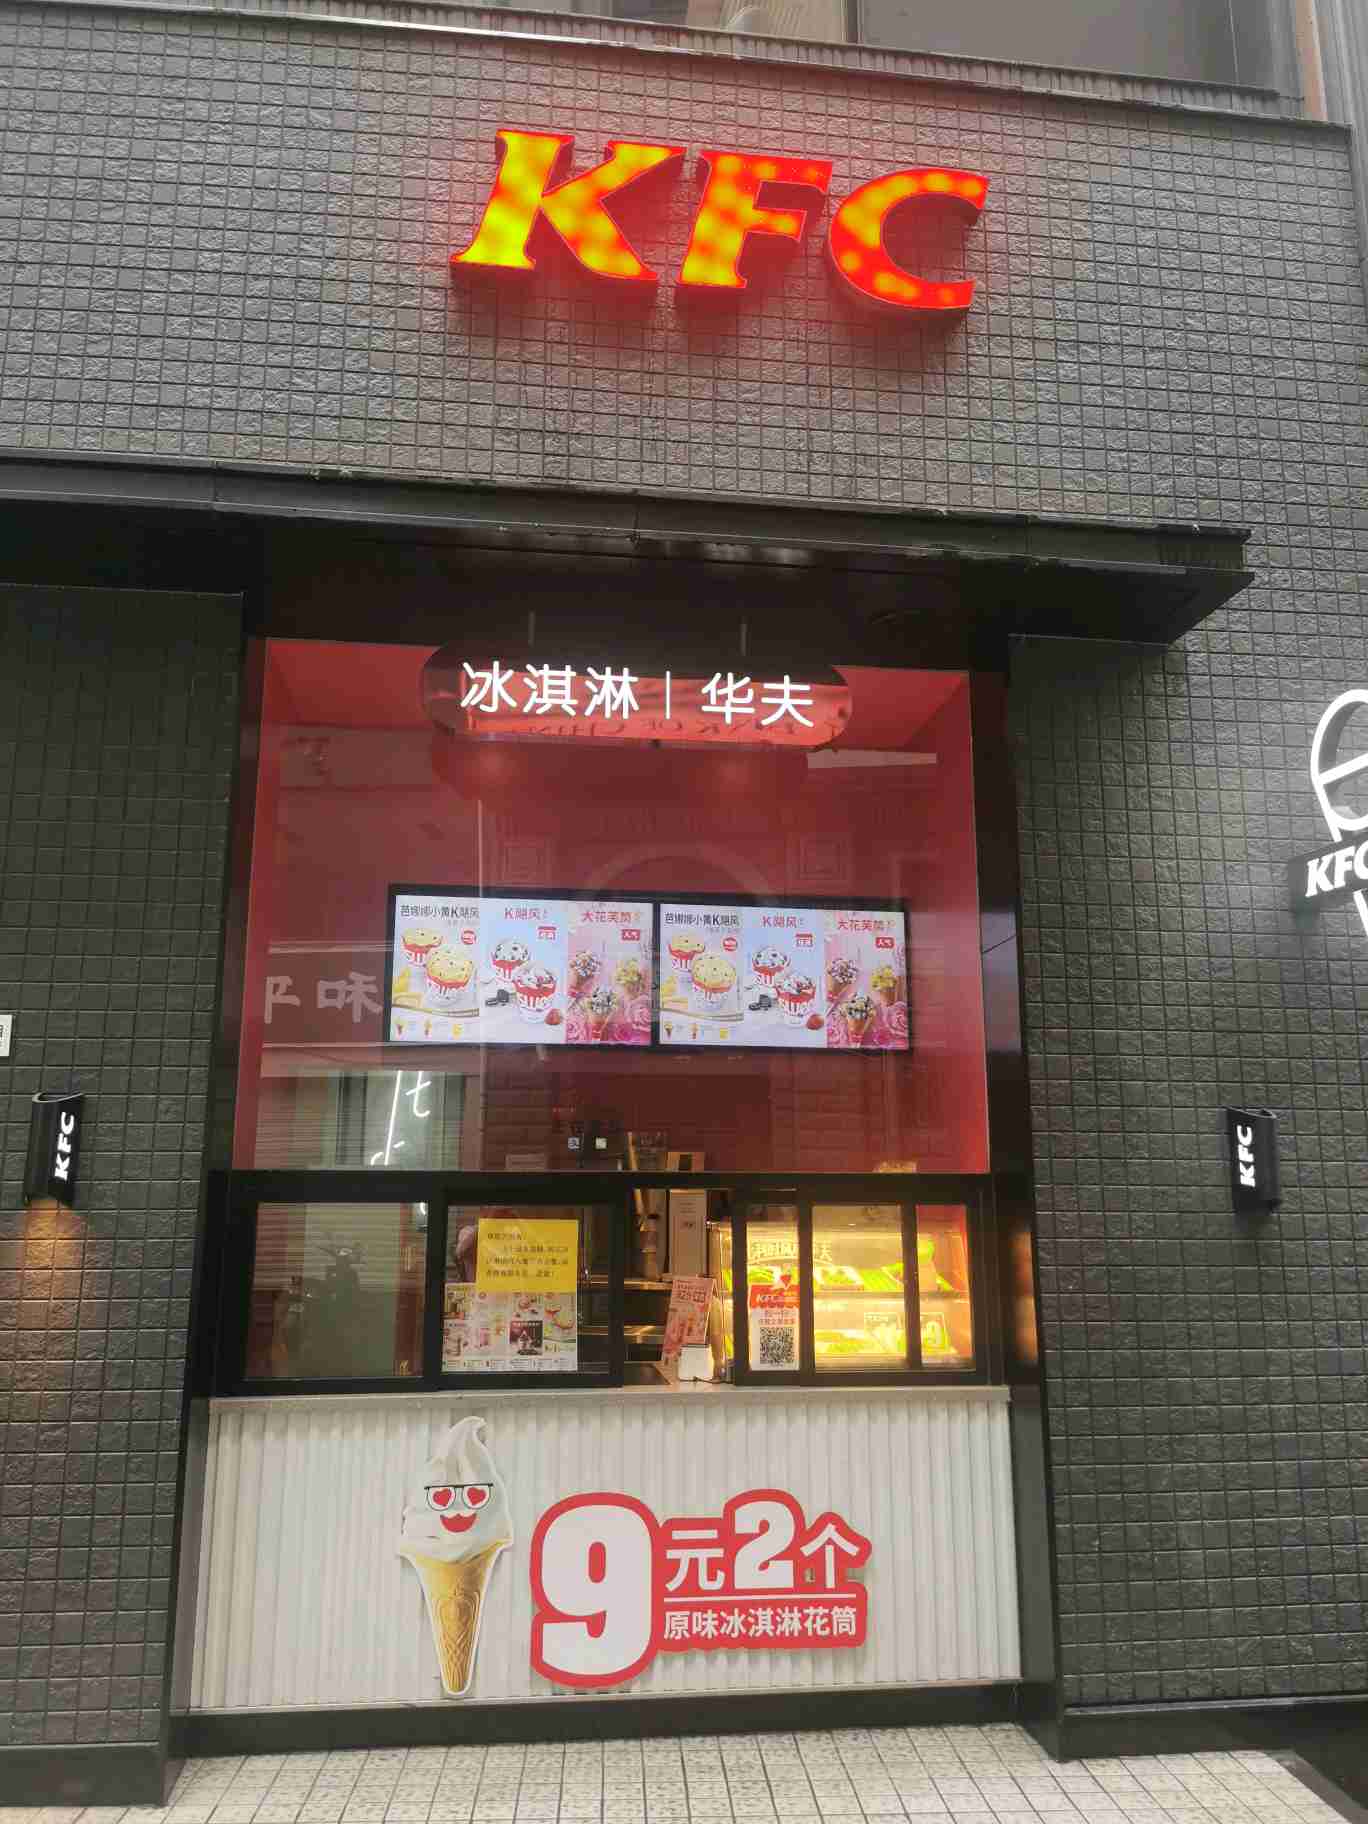 重庆肯德基有限公司元旦餐厅 环境照片活动图片